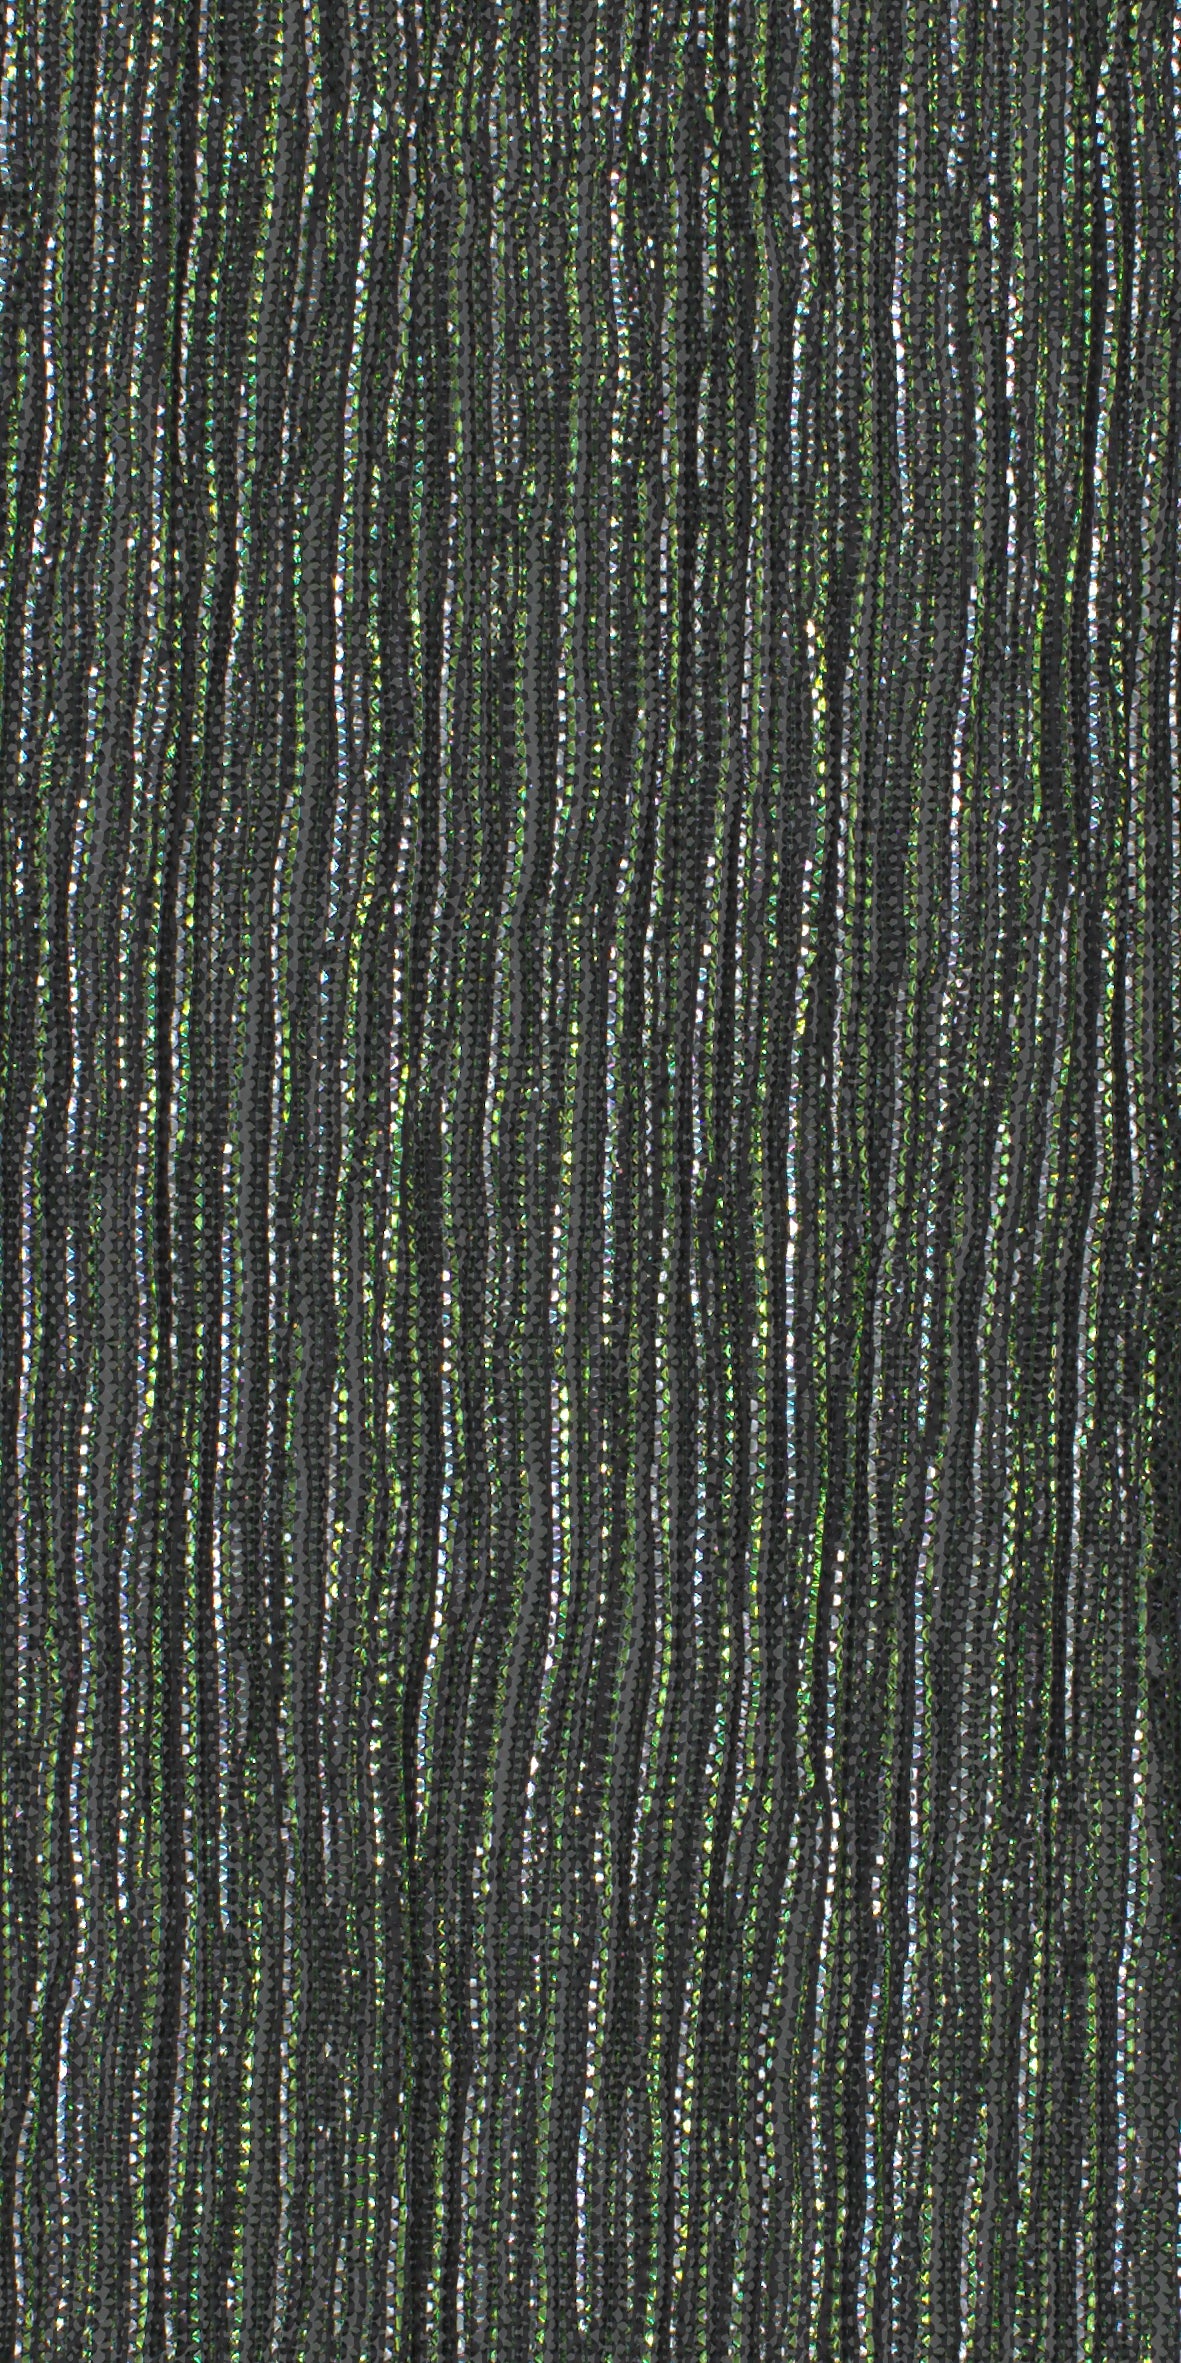 12006-07 Silver Green Metallic Pleat Plain Dyed Blend 126g/yd 56&quot; blend green knit metallic plain dyed pleat ppl new silver Metallic, Pleat - knit fabric - woven fabric - fabric company - fabric wholesale - fabric b2b - fabric factory - high quality fabric - hong kong fabric - fabric hk - acetate fabric - cotton fabric - linen fabric - metallic fabric - nylon fabric - polyester fabric - spandex fabric - chun wing hing - cwh hk - fabric worldwide ship - 針織布 - 梳織布 - 布料公司- 布料批發 - 香港布料 - 秦榮興